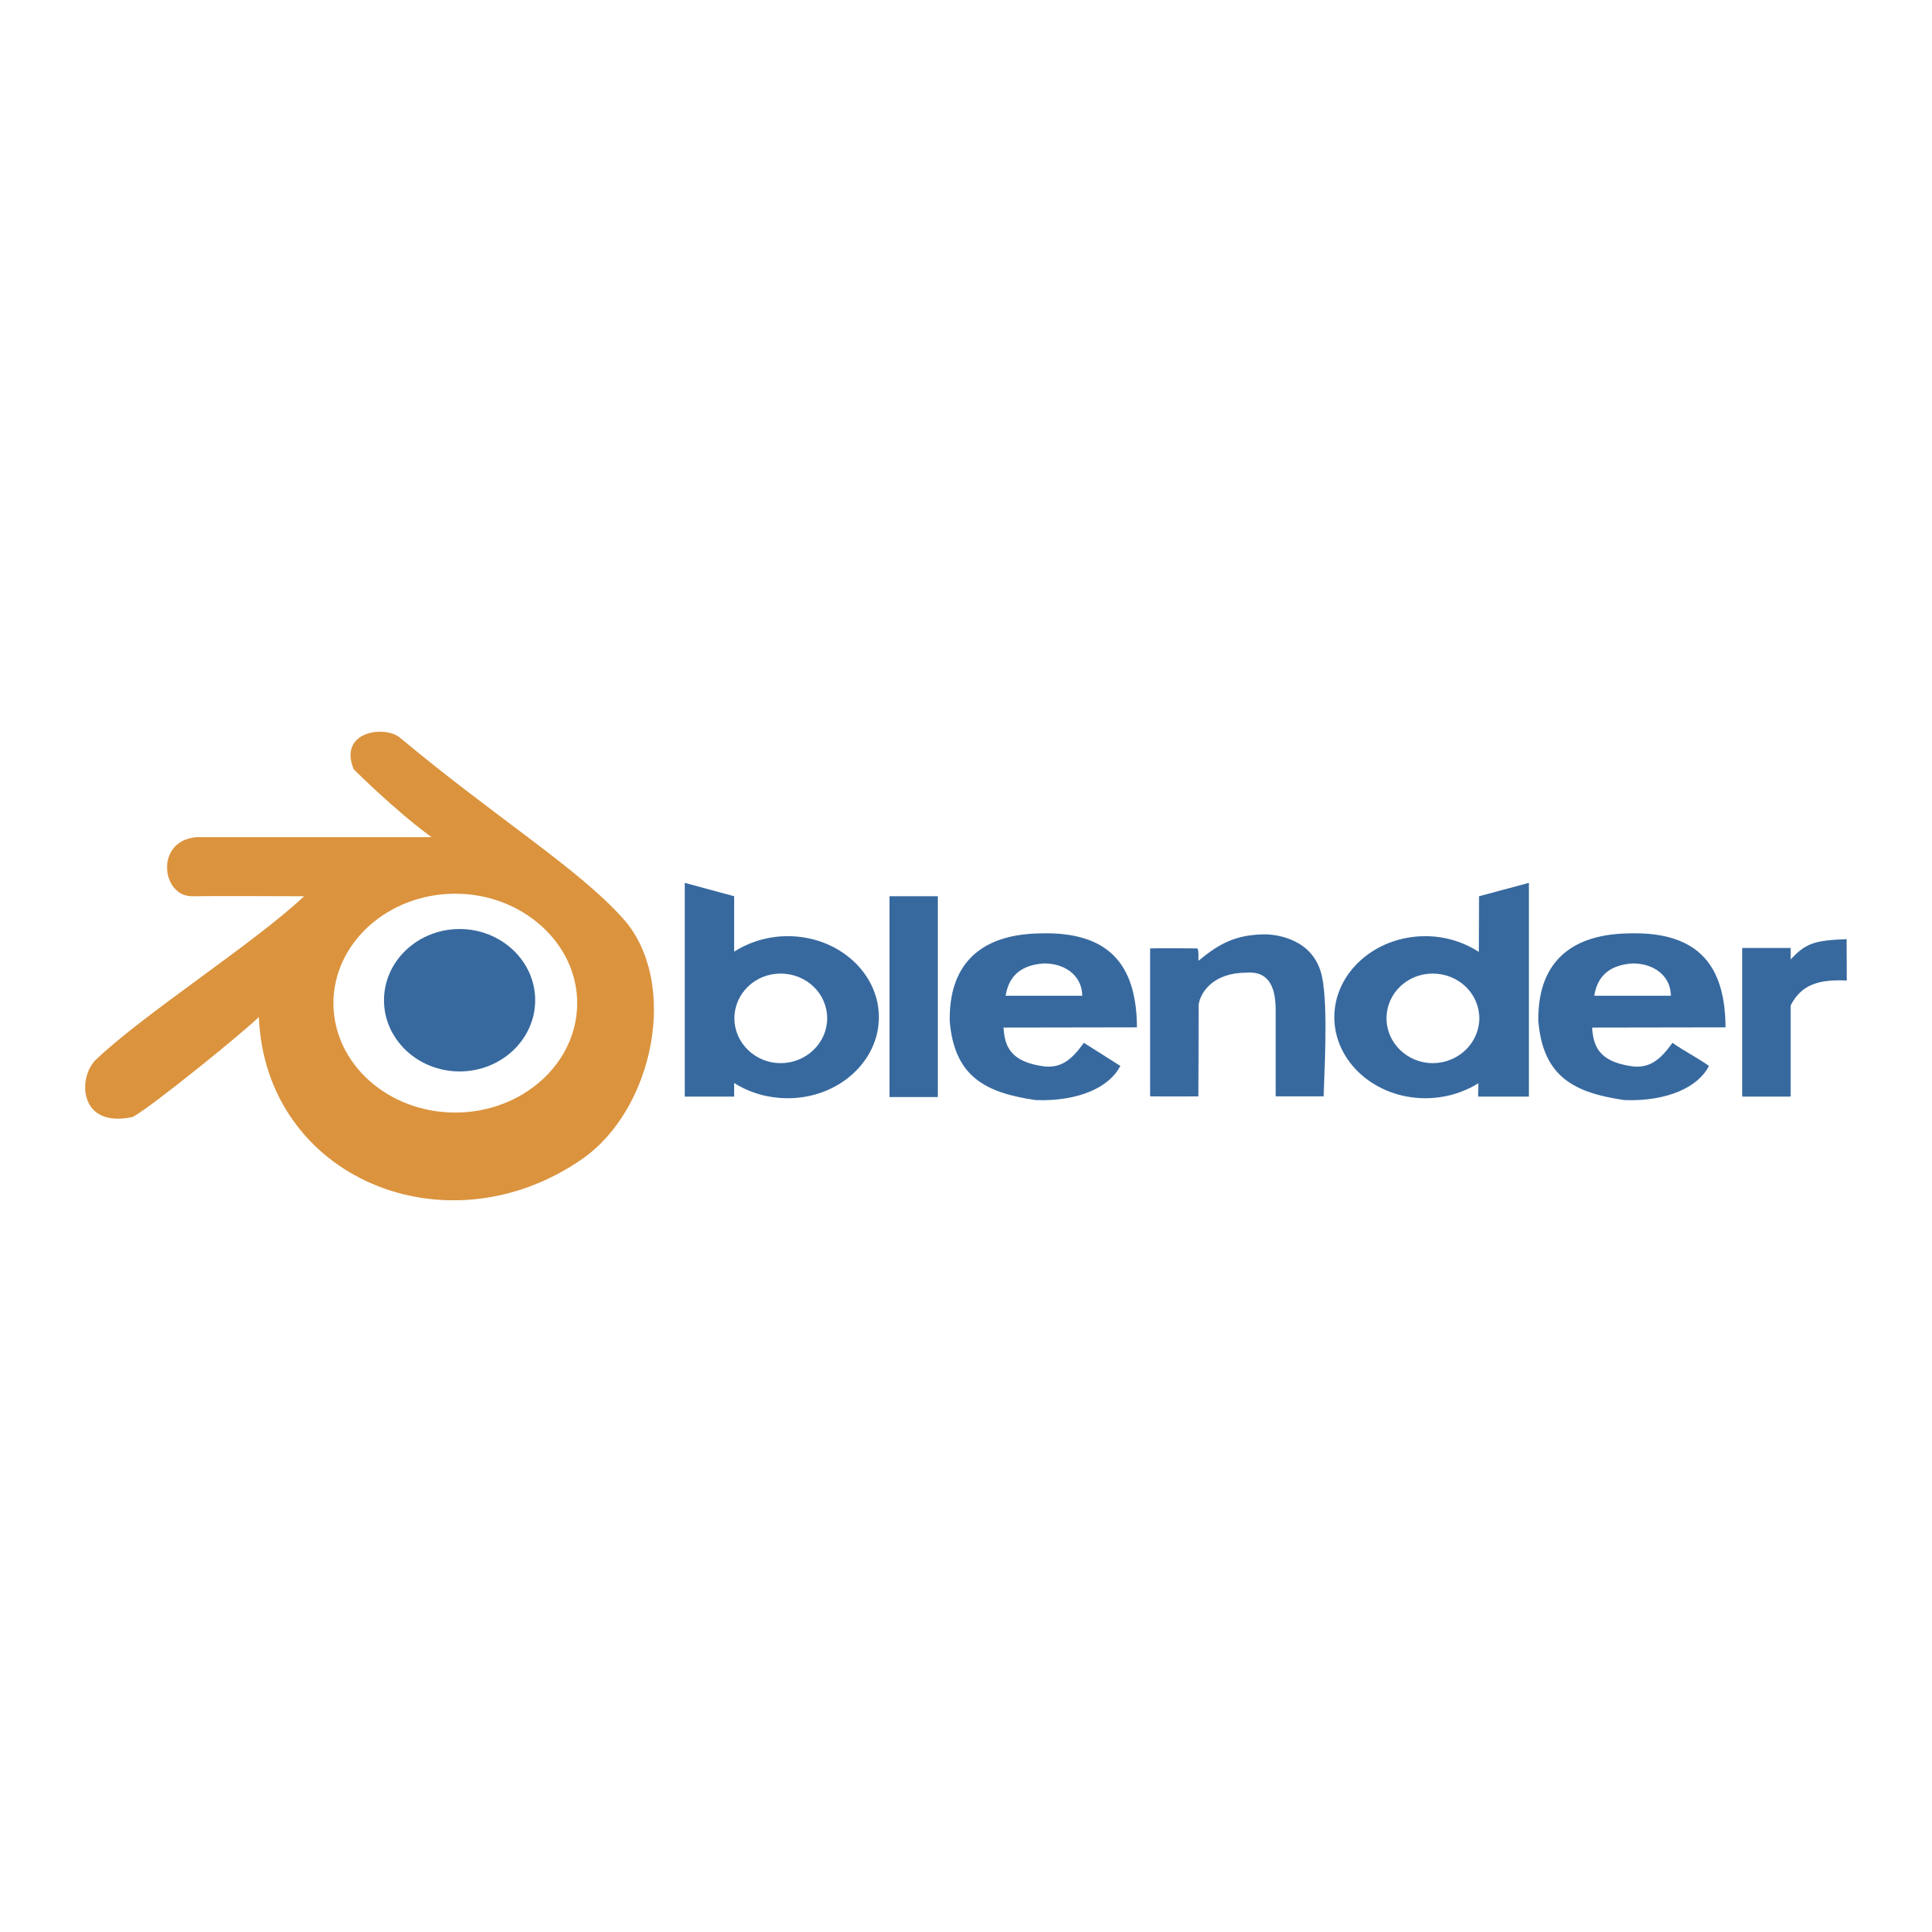 Blender Logo - Blender Logo PNG Transparent & SVG Vector - Freebie Supply